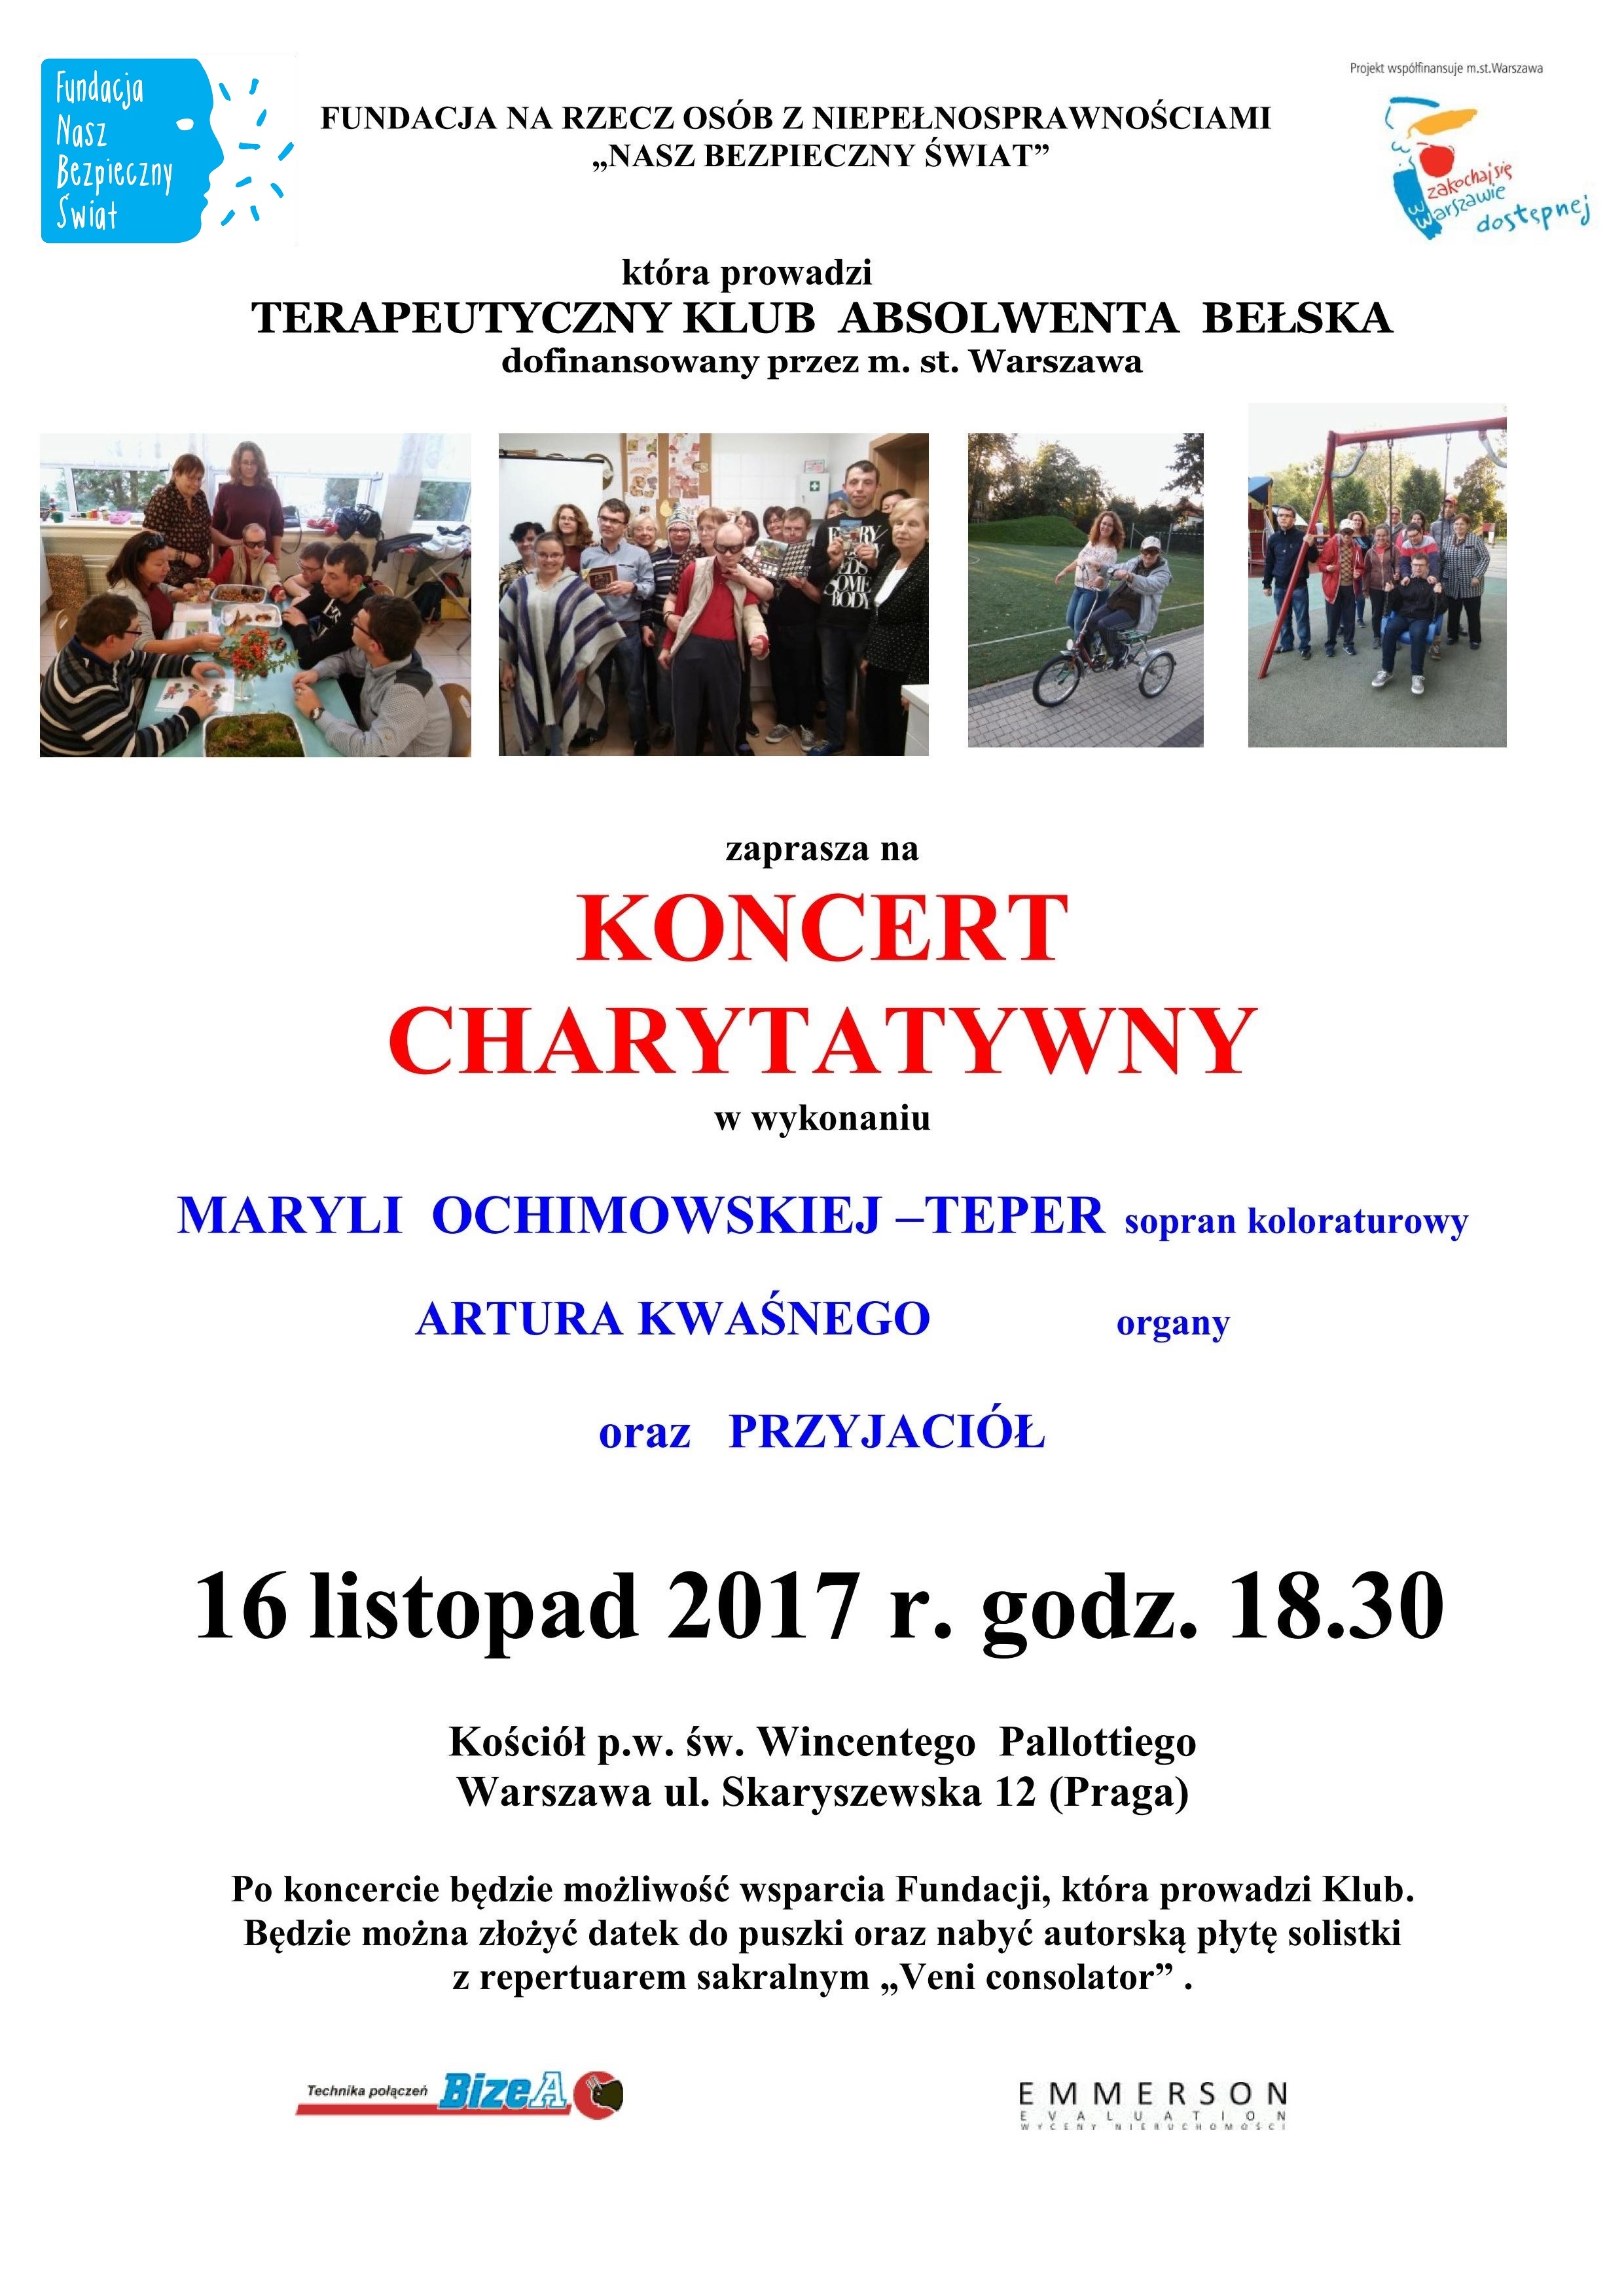 Koncert charytatywny 16.11.2017 na 